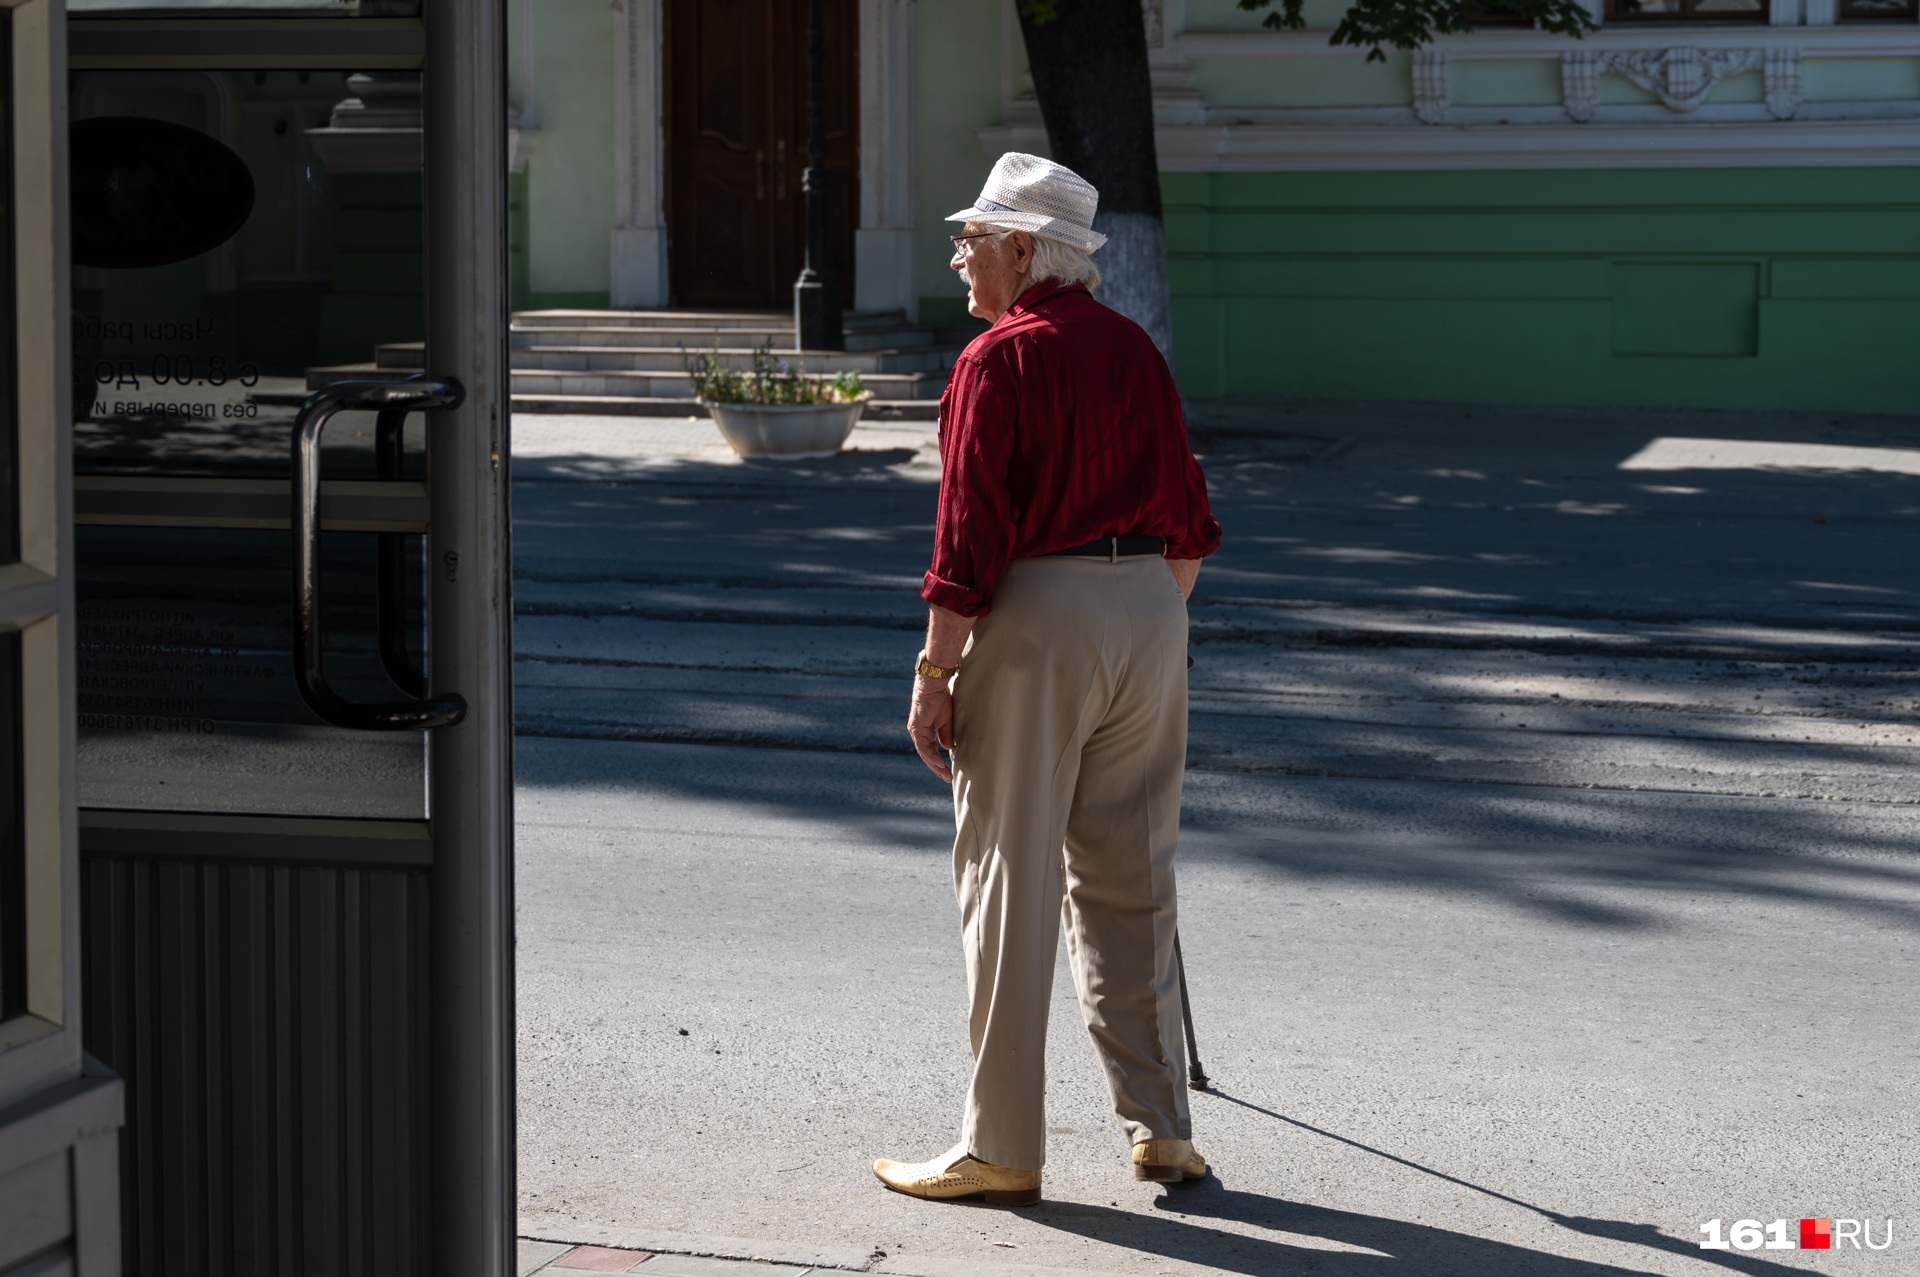 Гастро-паб «2 этаж» в Чите не пустил в заведение пенсионеров со своим алкоголем